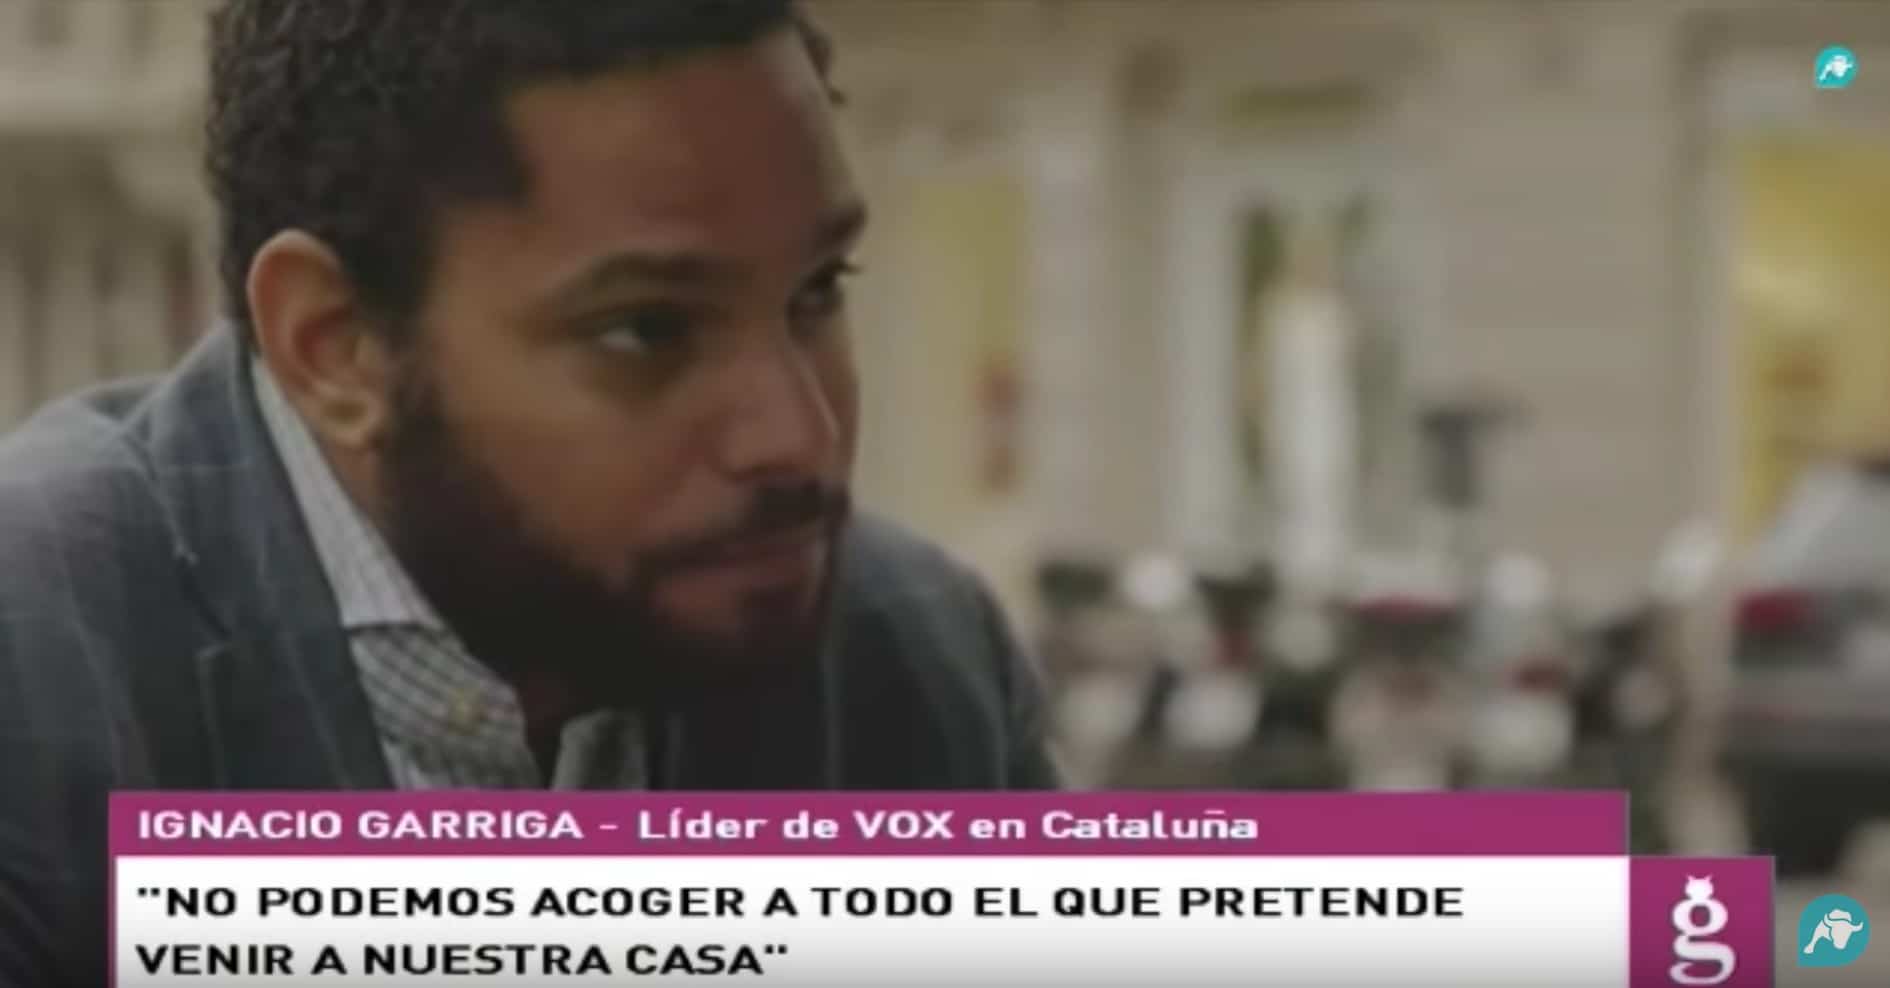 Cake entrevista a Ignacio Garriga para desmontar las acusaciones de racismo contra VOX